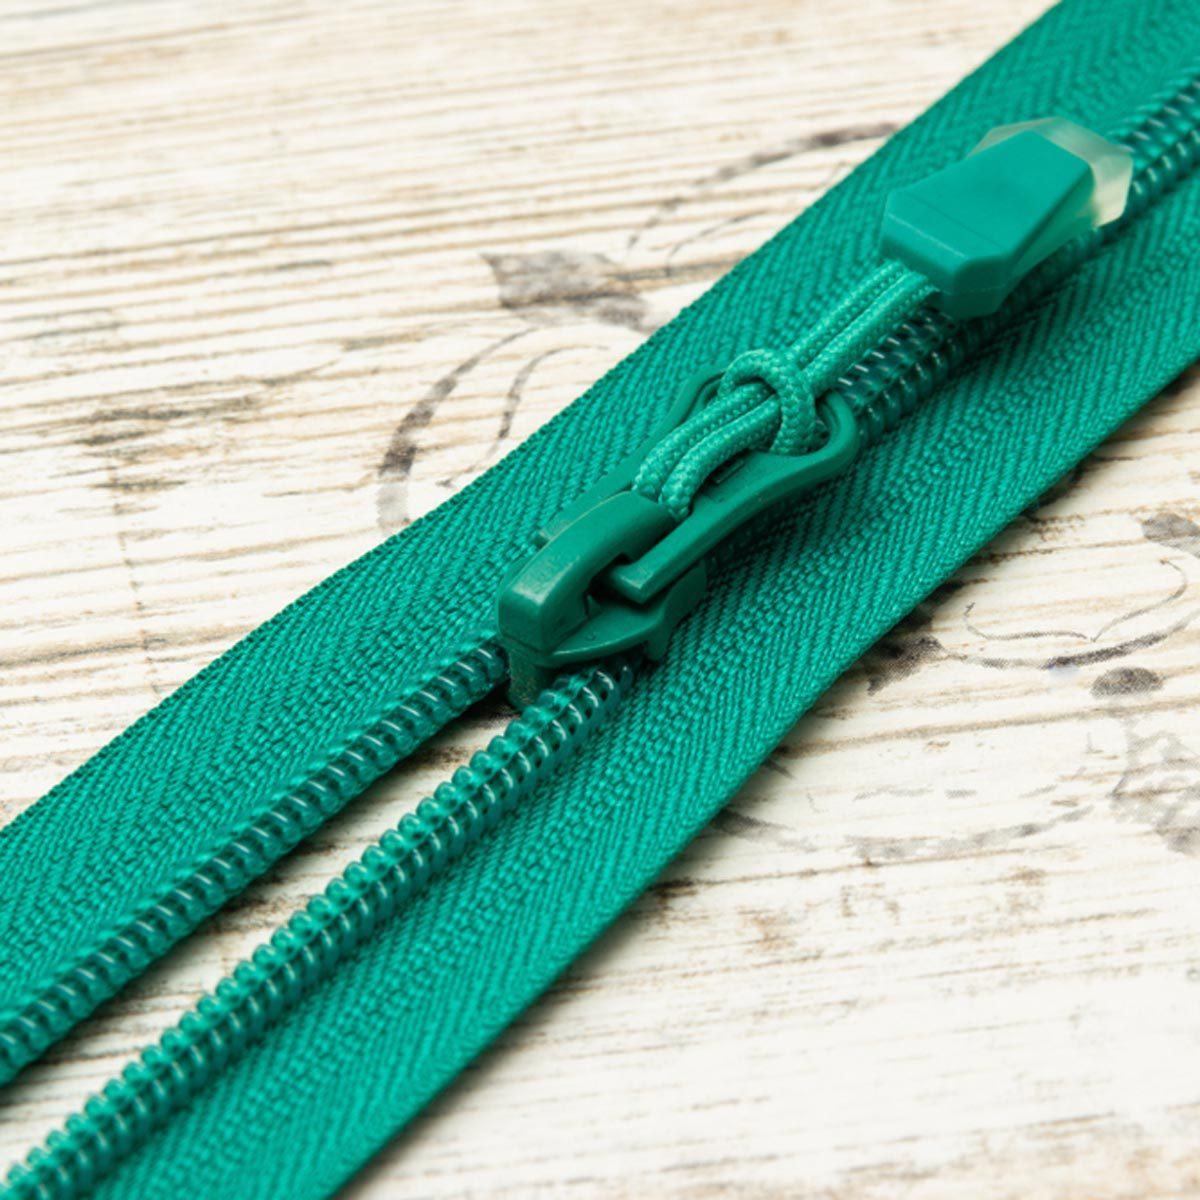 green zipper